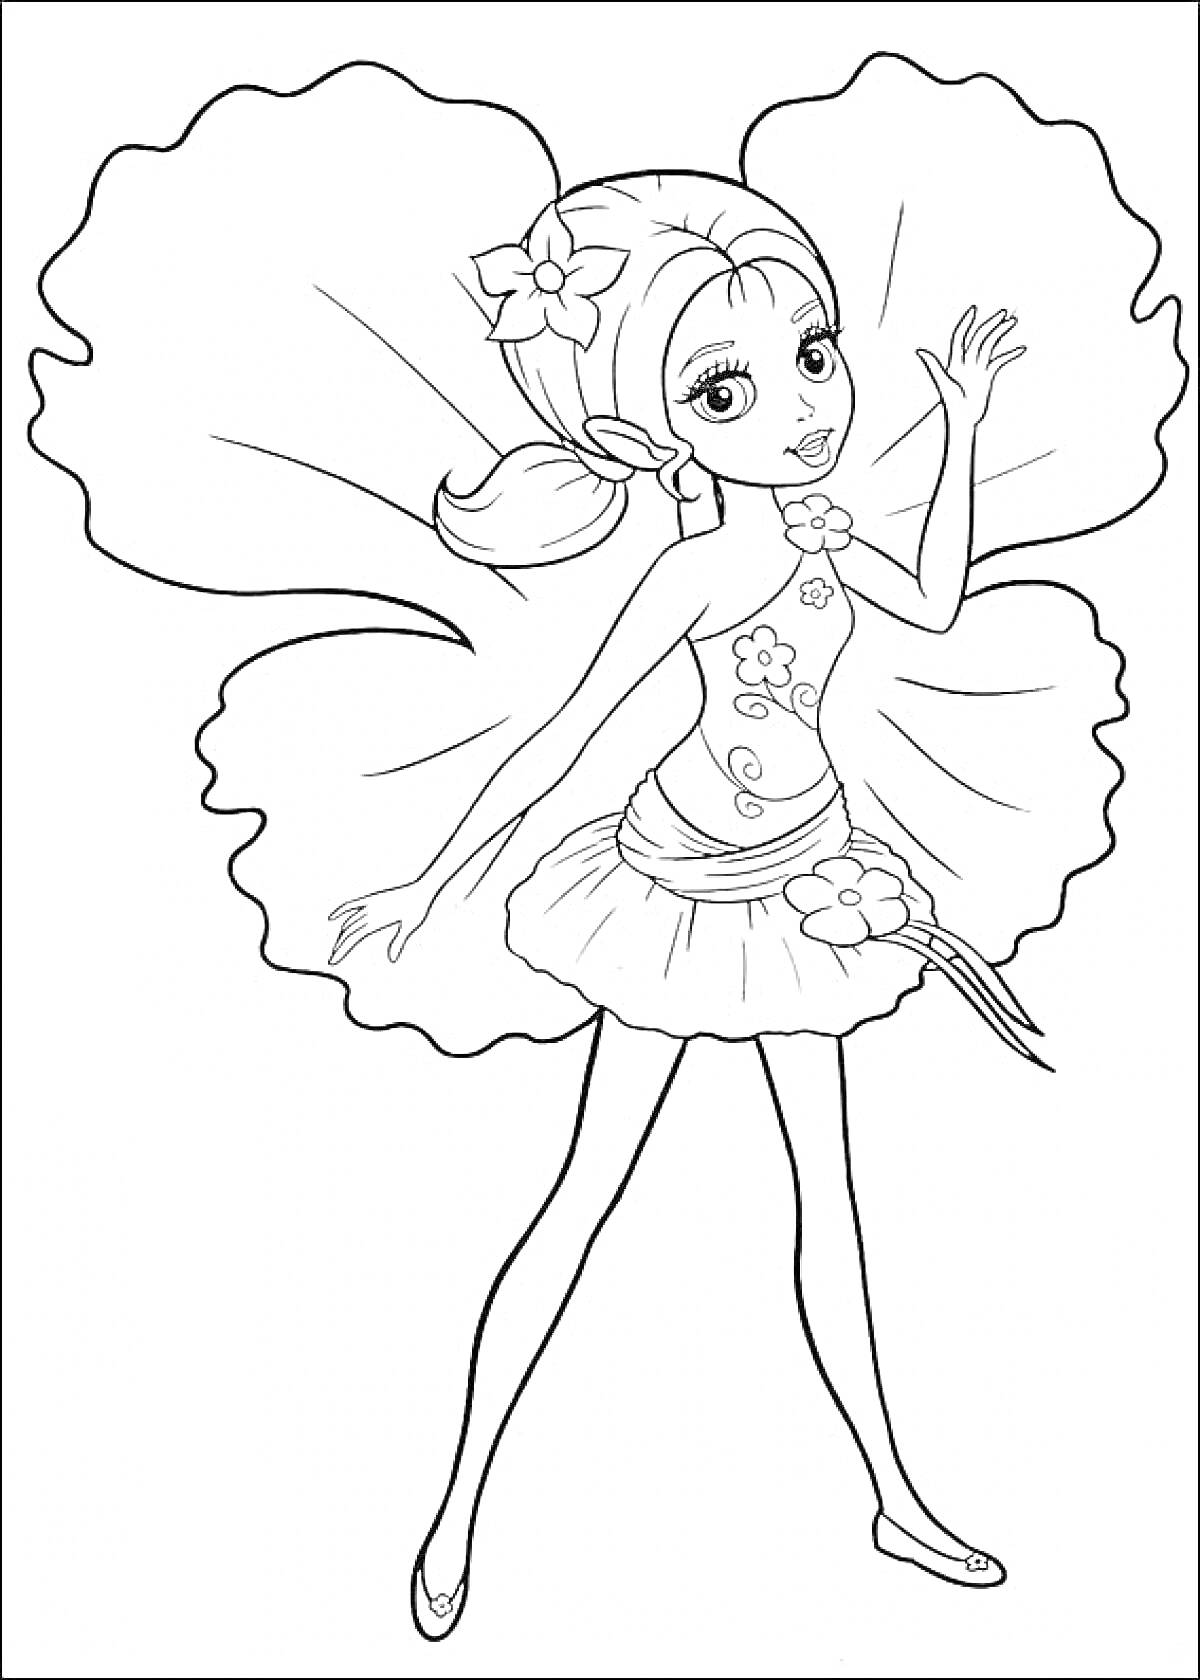 Раскраска Барби Дюймовочка с цветочными крыльями и цветком на платье